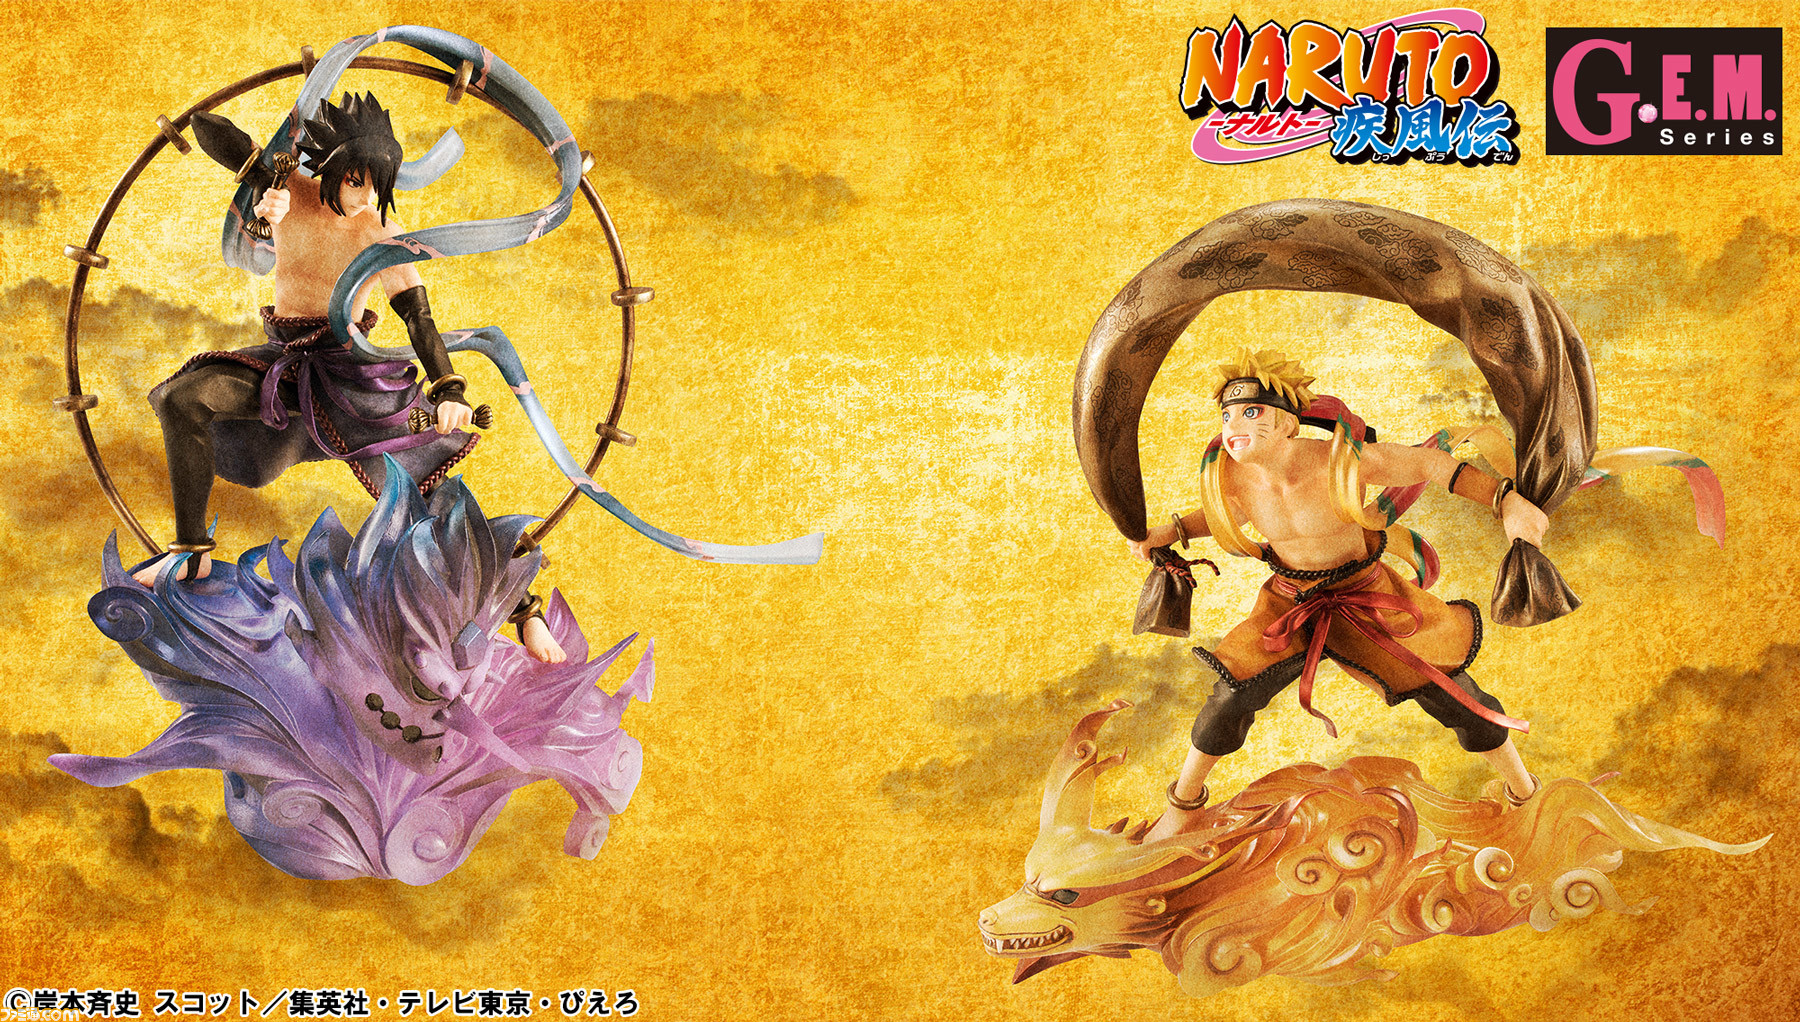 Naruto ナルト 疾風伝 風神雷神の姿になったナルトとサスケのフィギュアがセットで登場 ファミ通 Com